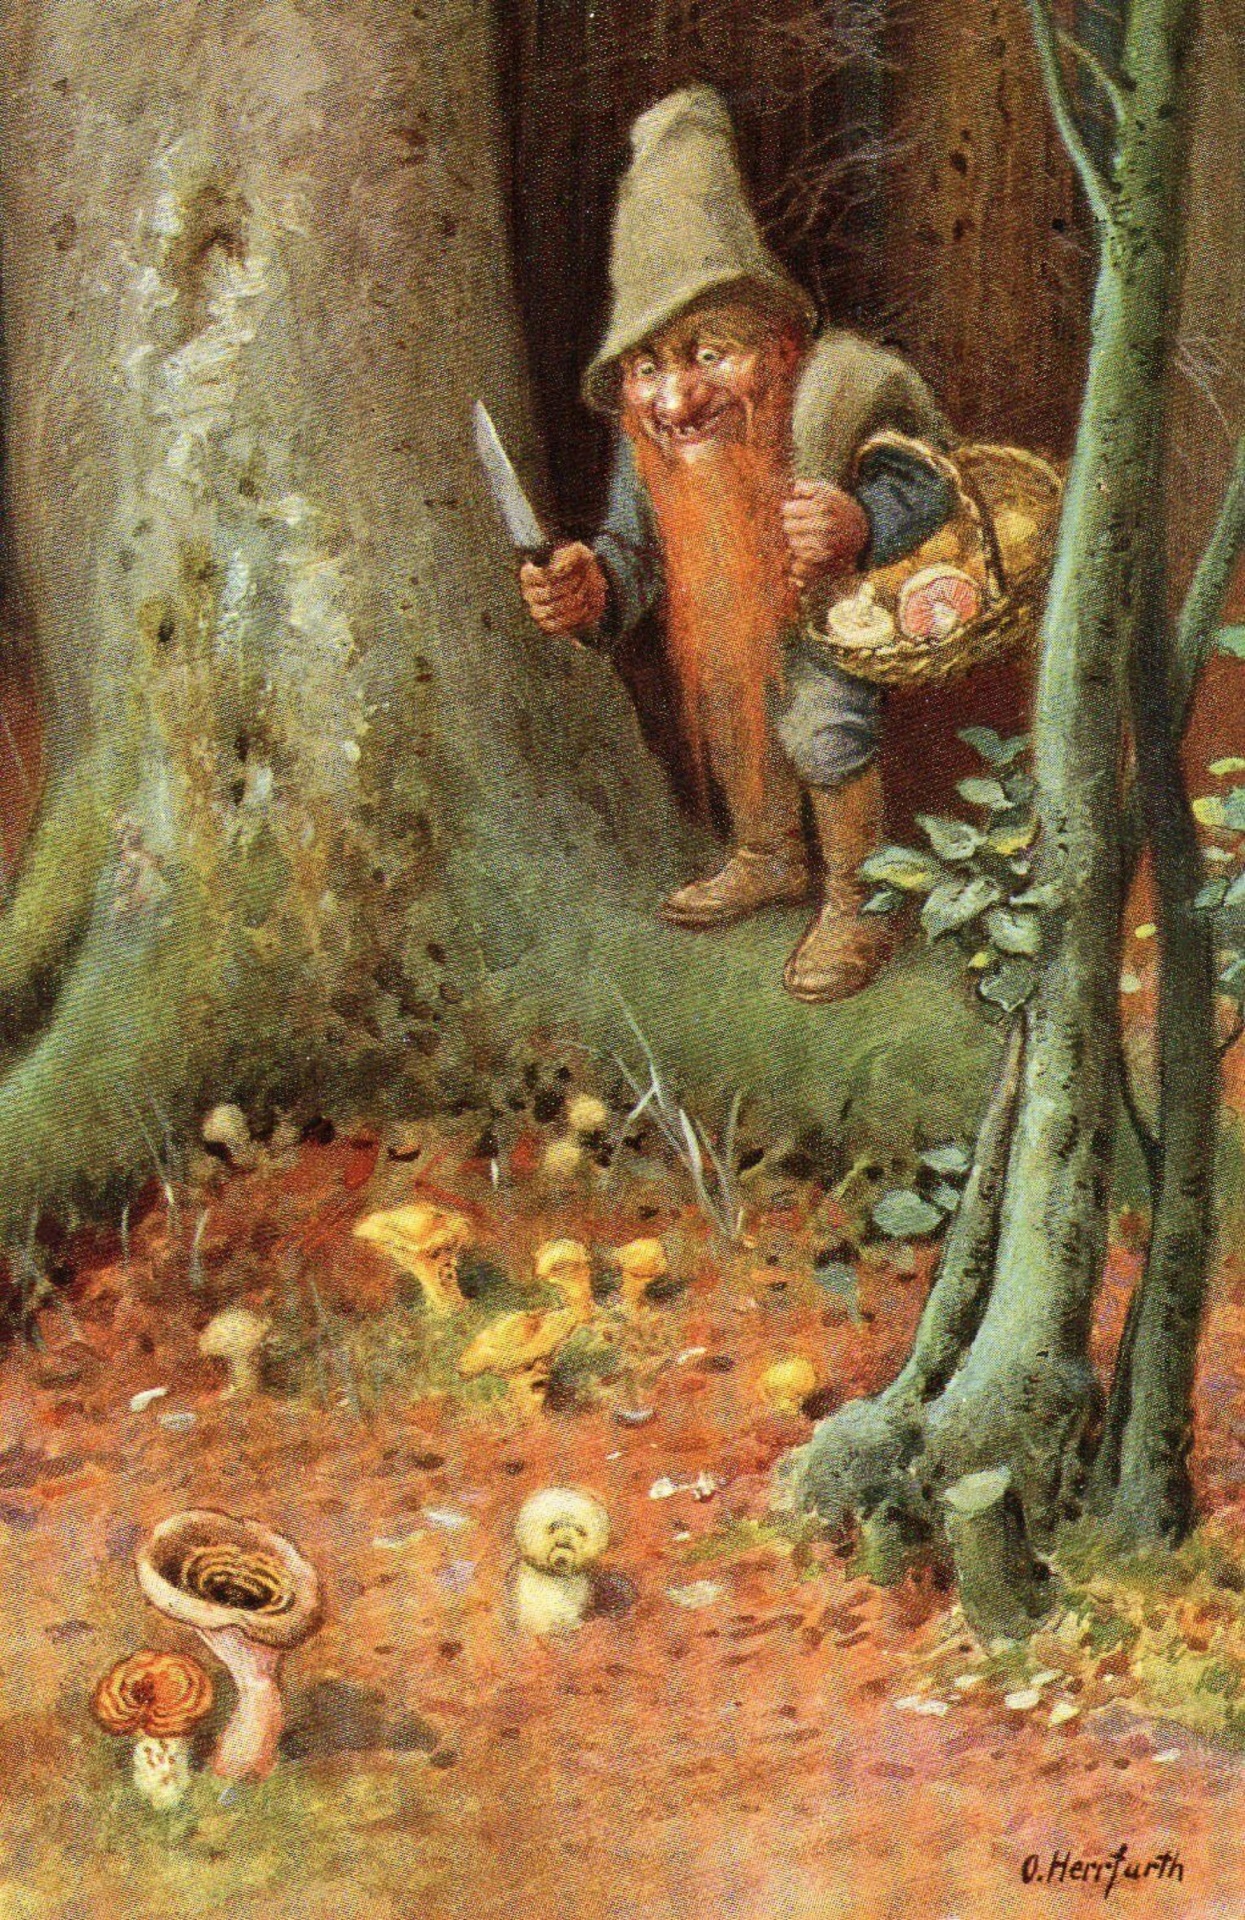 Troll en bosque de setas otoñales